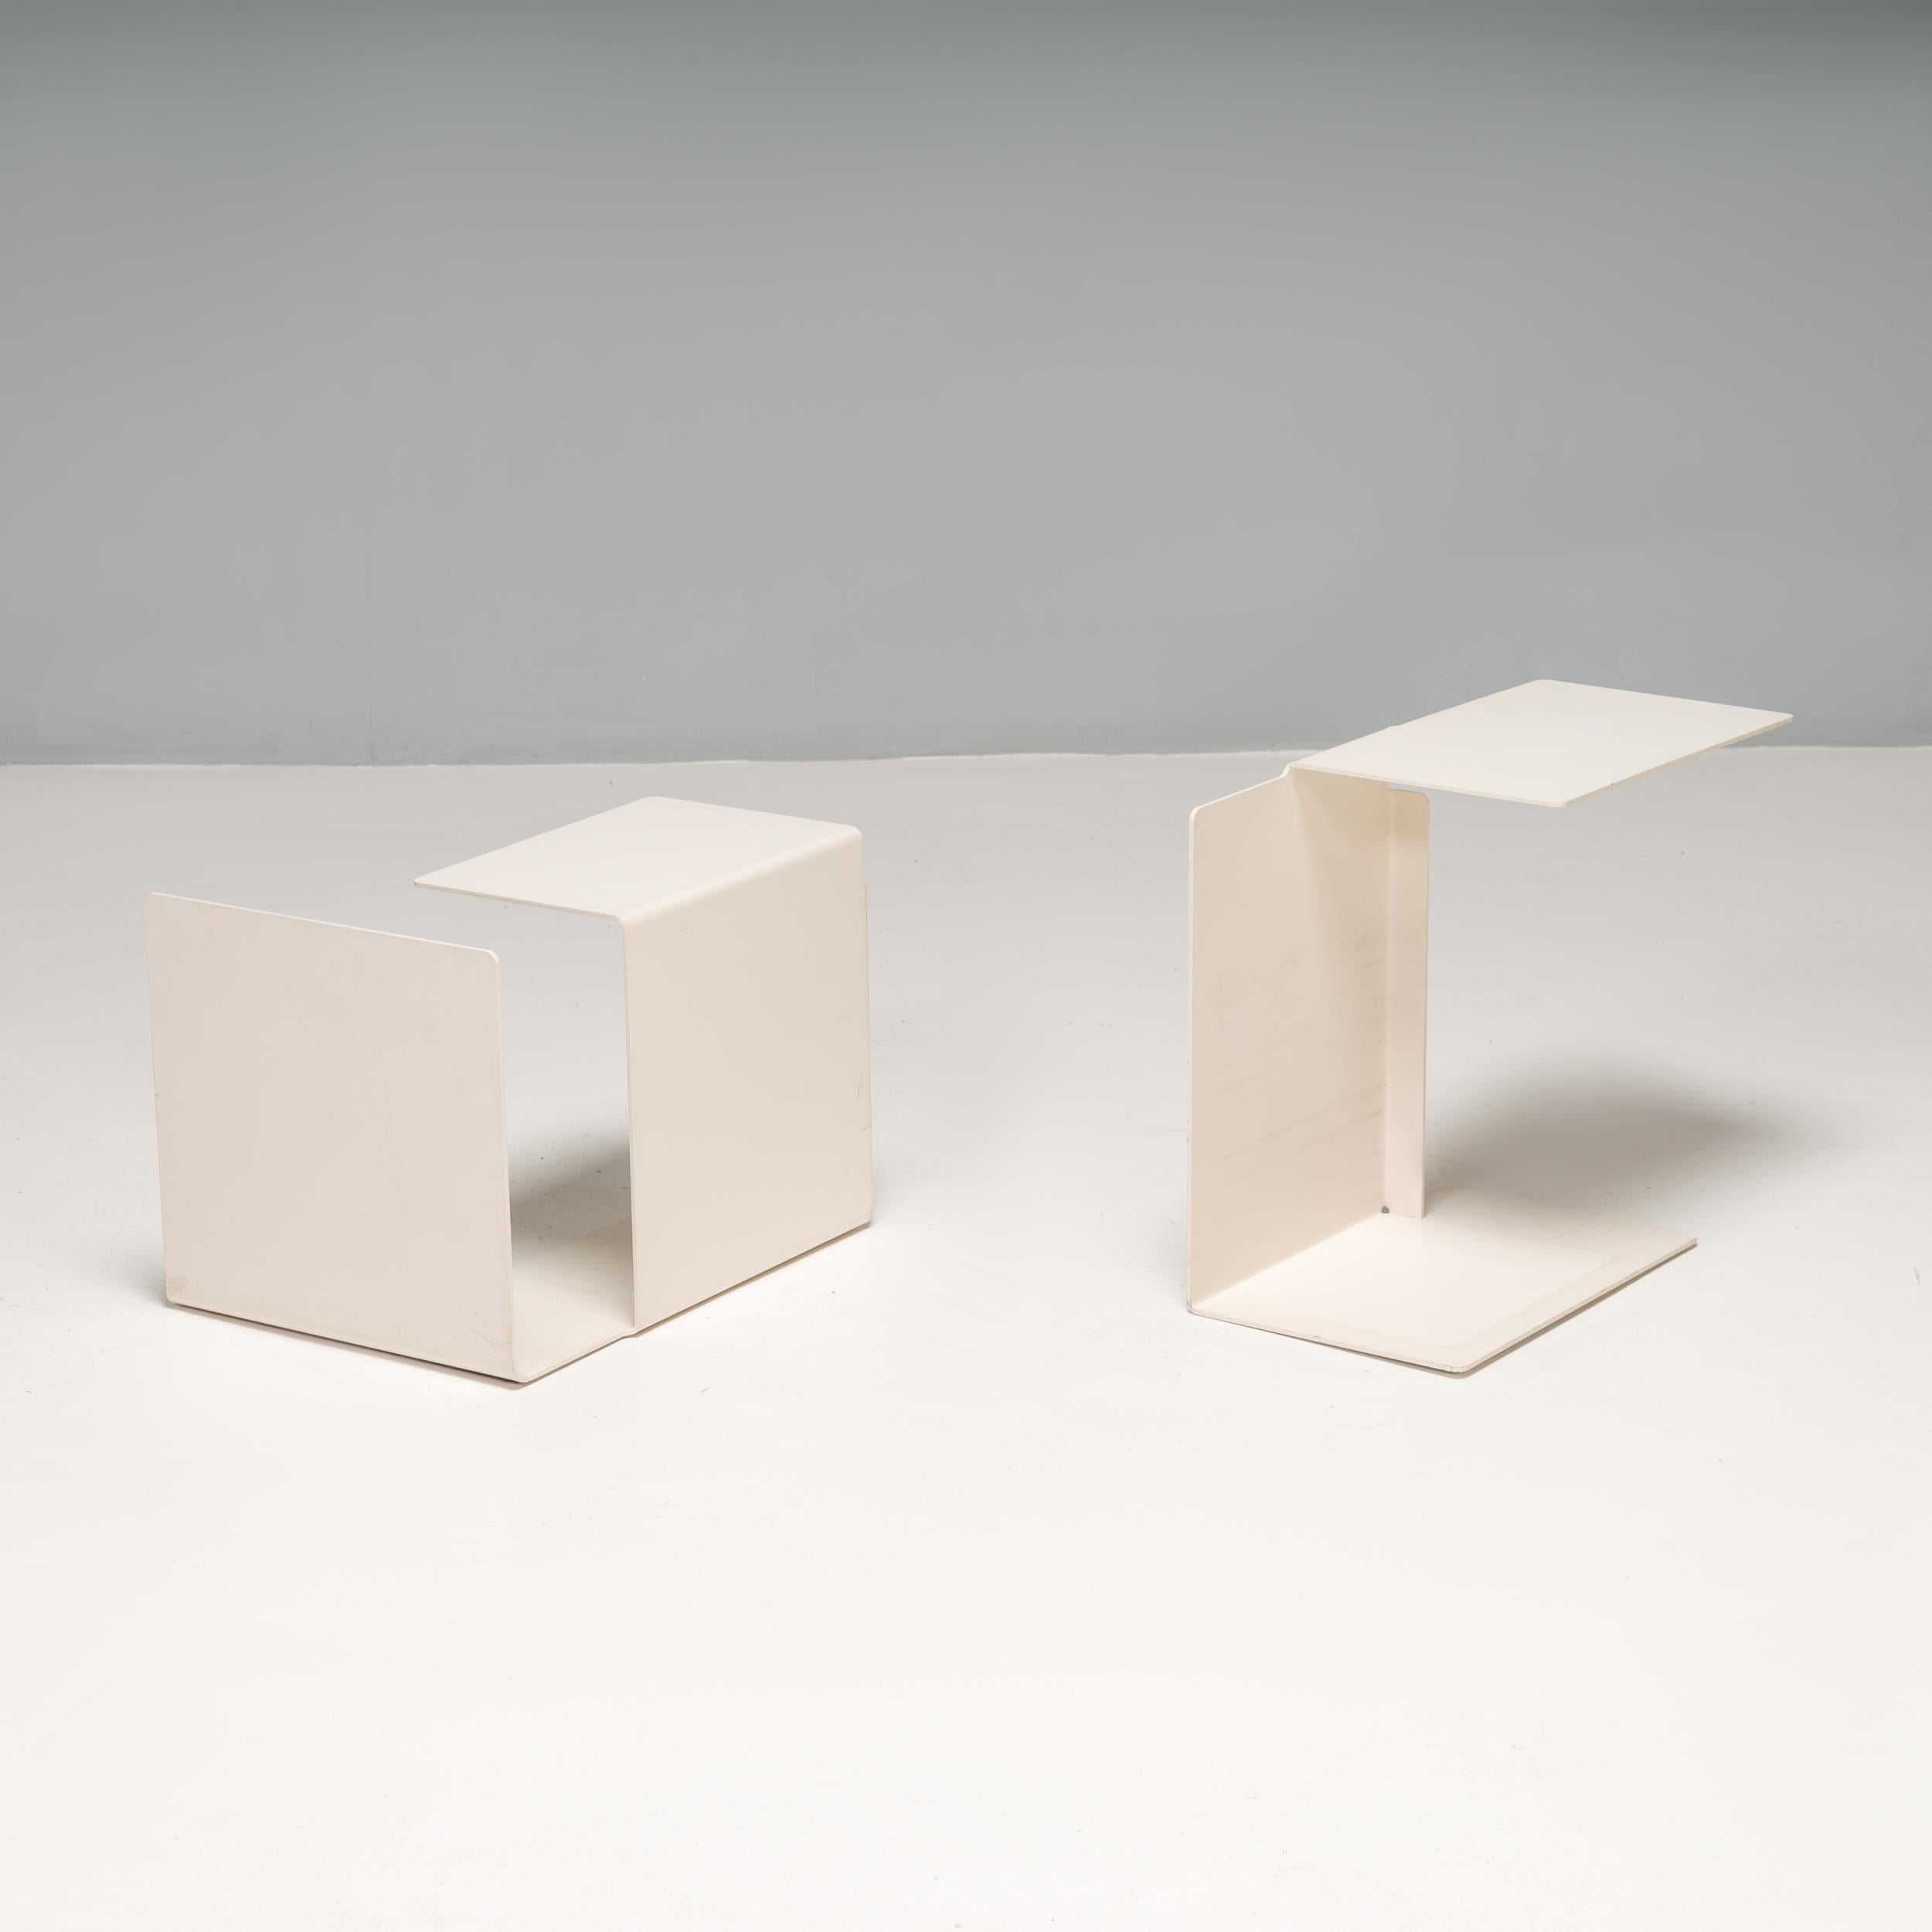 Conçue à l'origine par Konstantin Grcic pour ClassiCon en 2002, la collection de tables d'appoint Diana présente une multitude de variations du style origami, chacune portant le nom d'une lettre de l'alphabet.

Expérimentant le nombre de plans